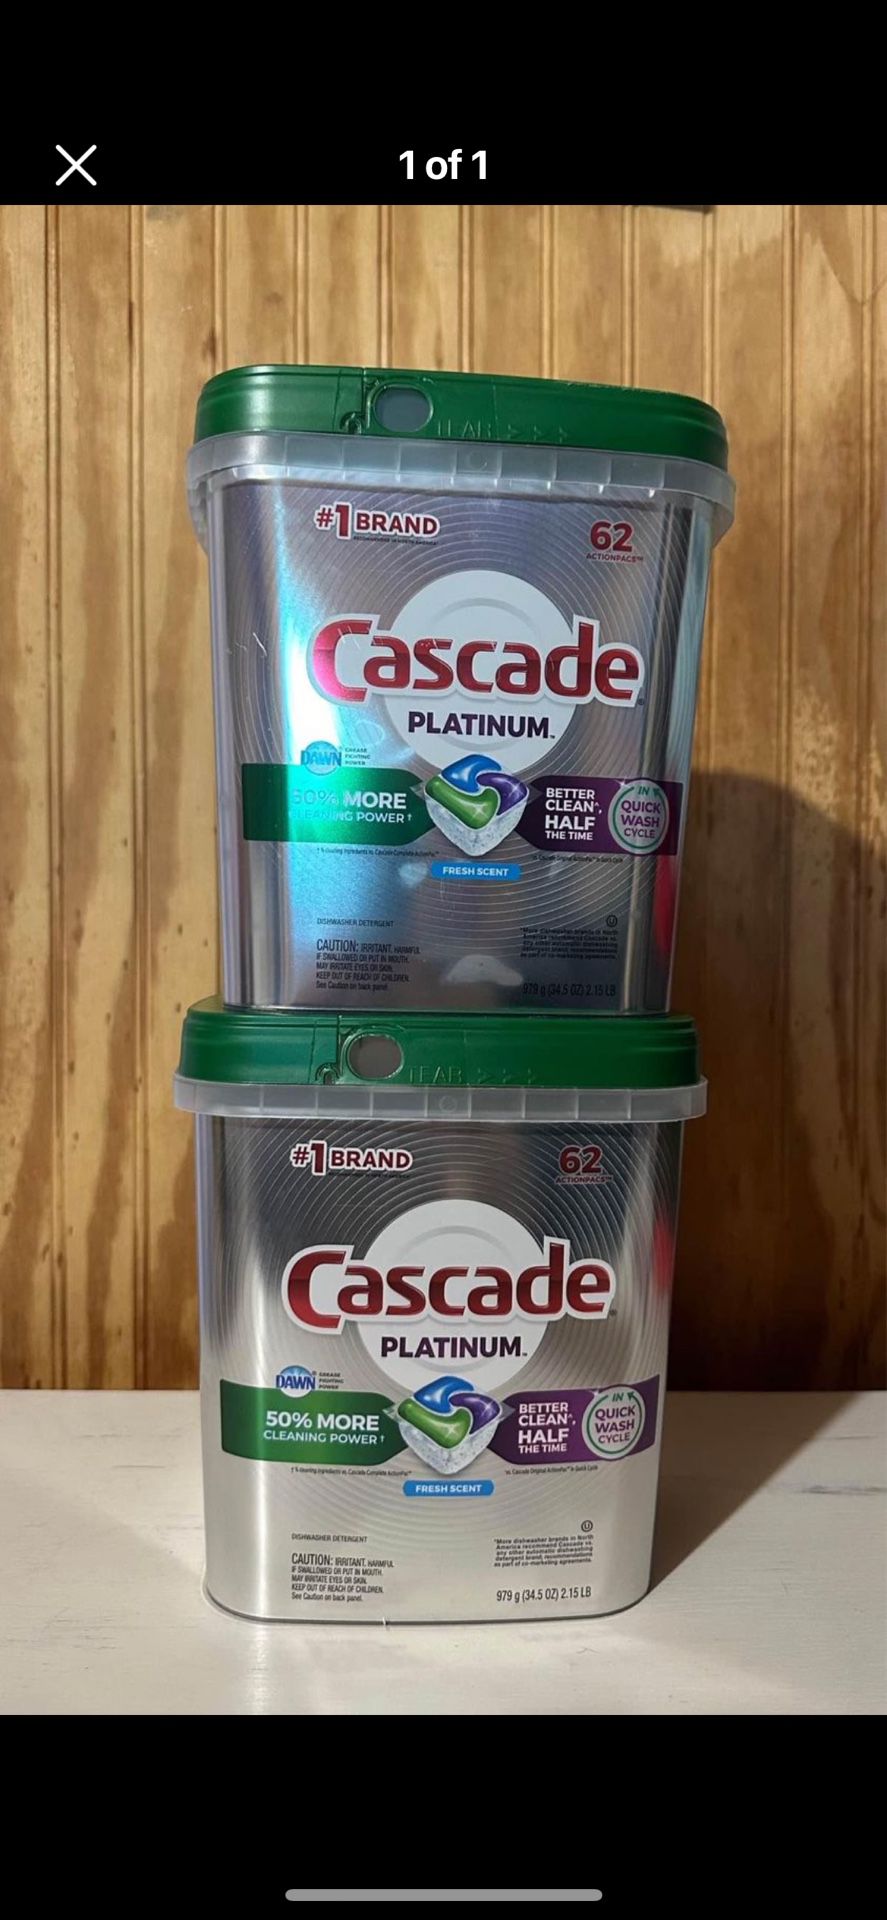 2 Cascade Platinum ActionPacs, Dishwasher Detergent, Fresh Scent, 62 count each.